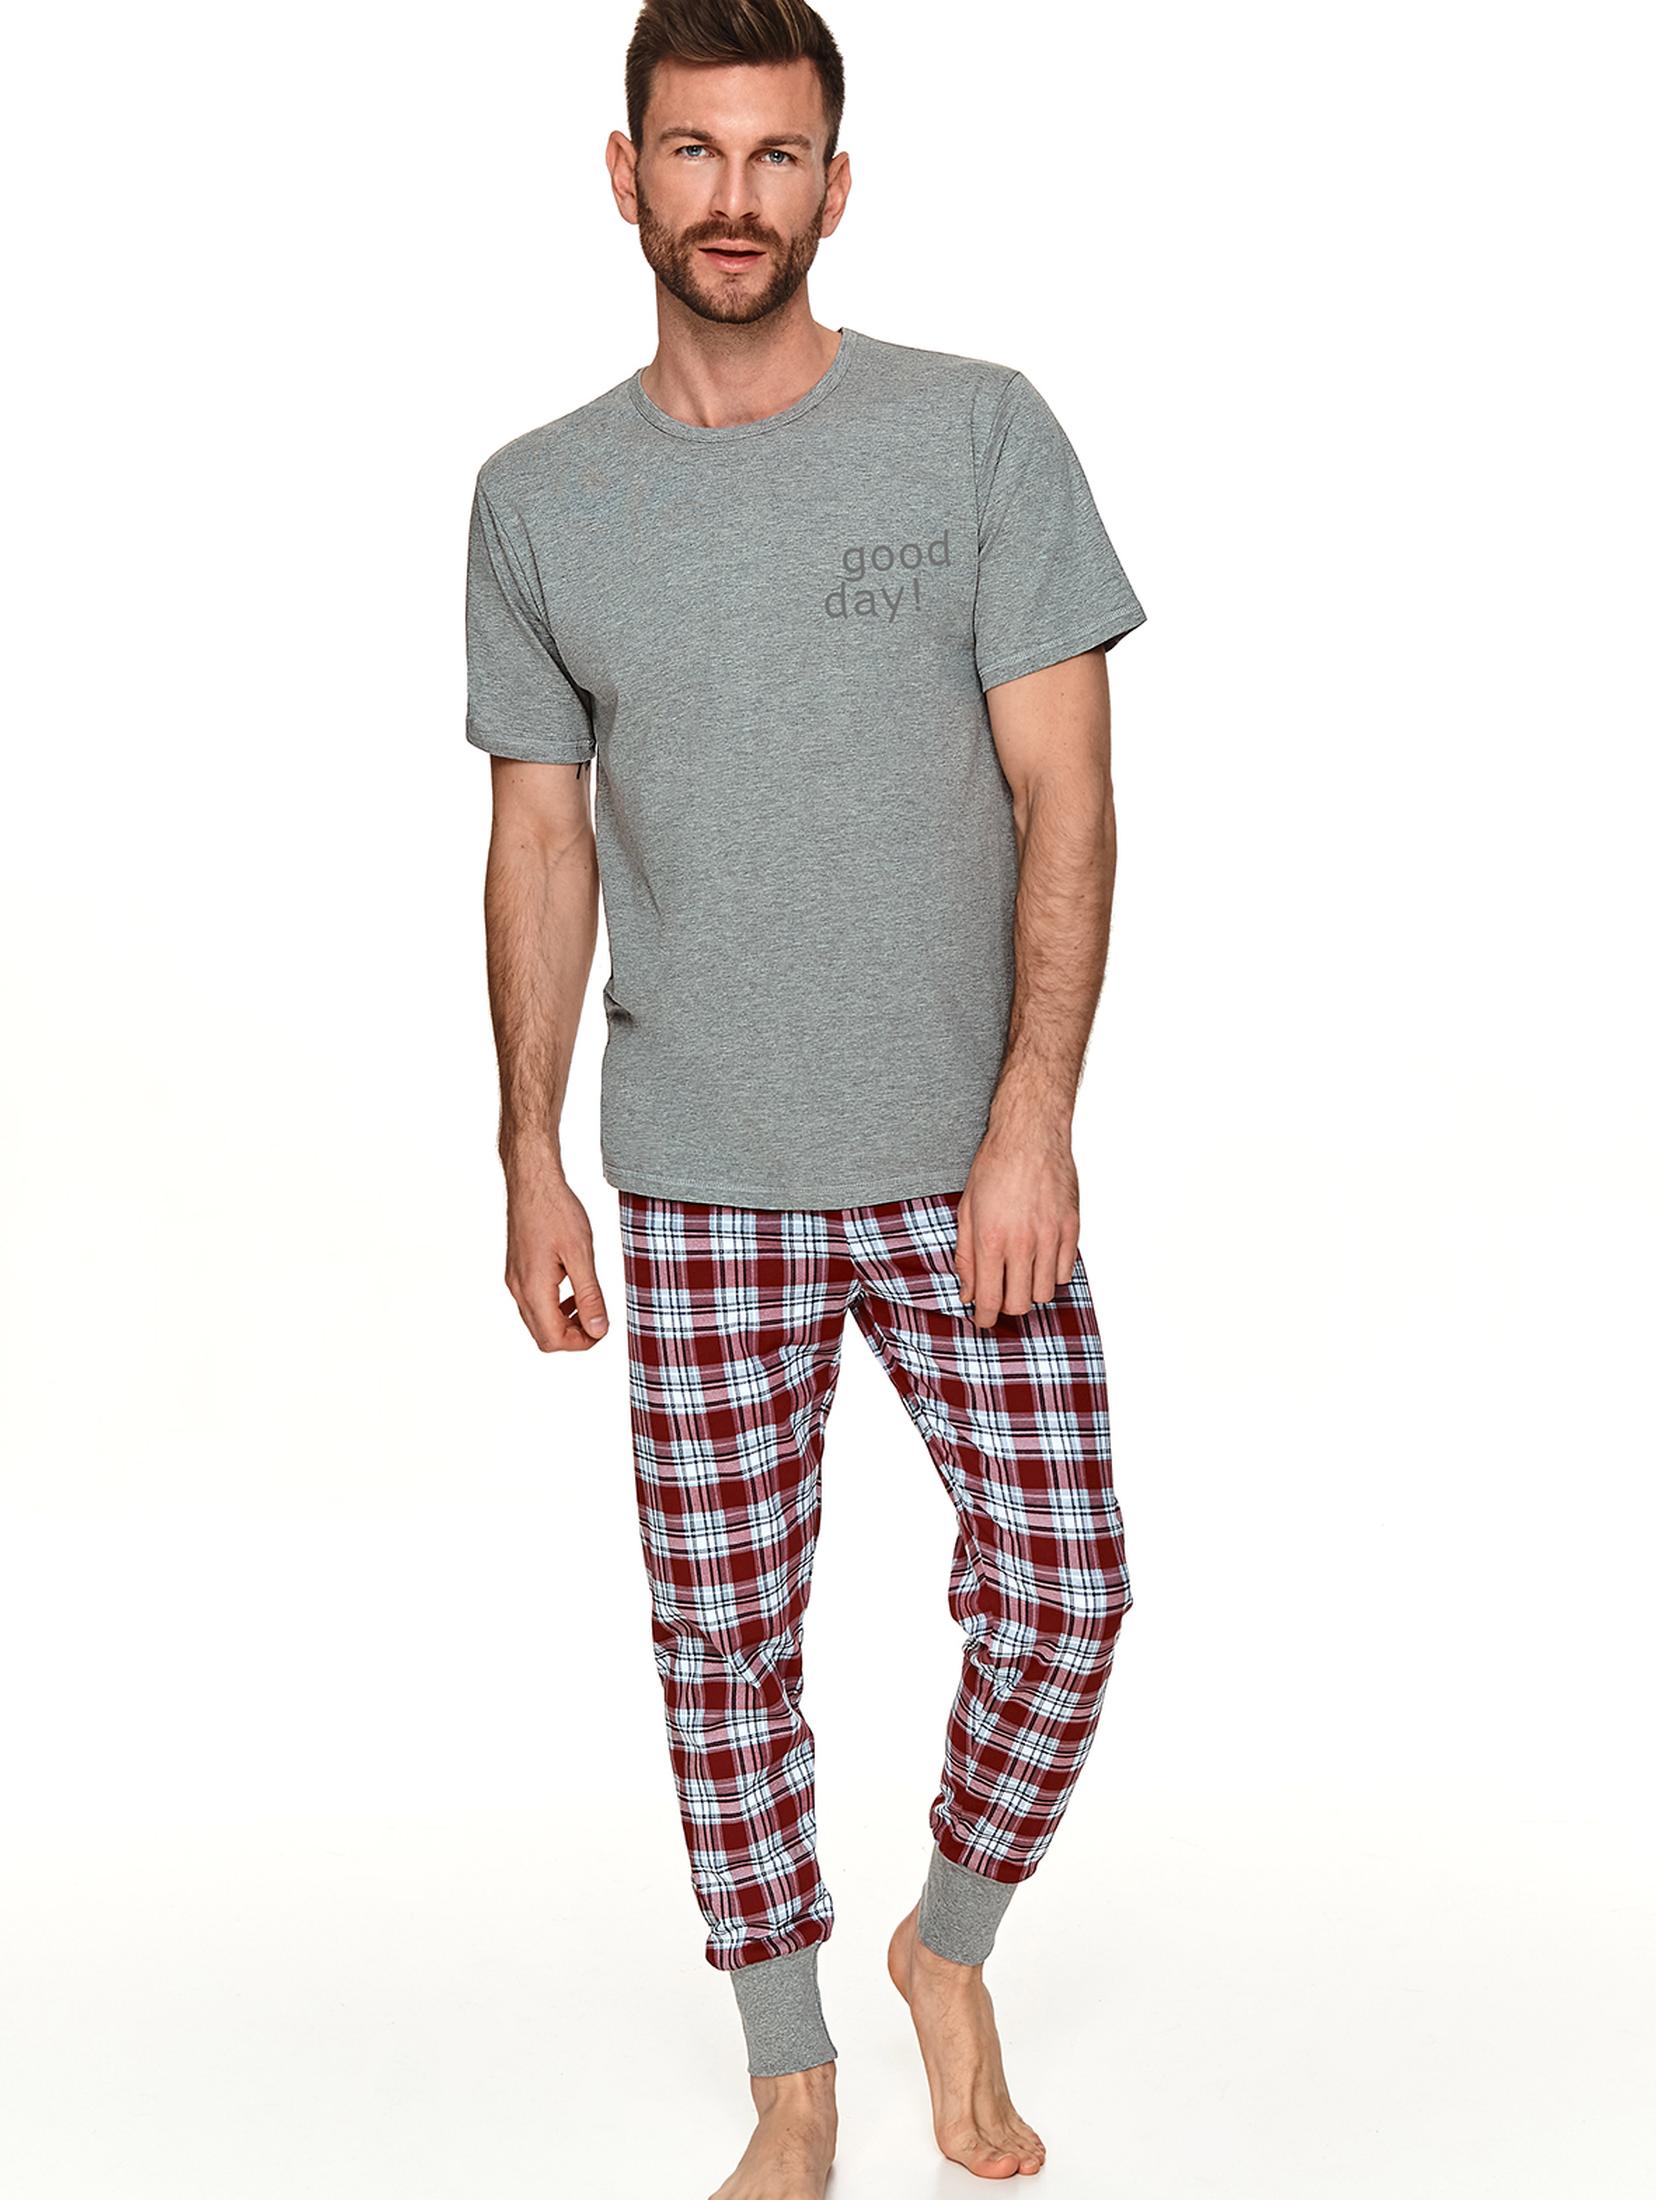 Dwuczęściowa piżama - T-shirt i długie spodnie w kratę